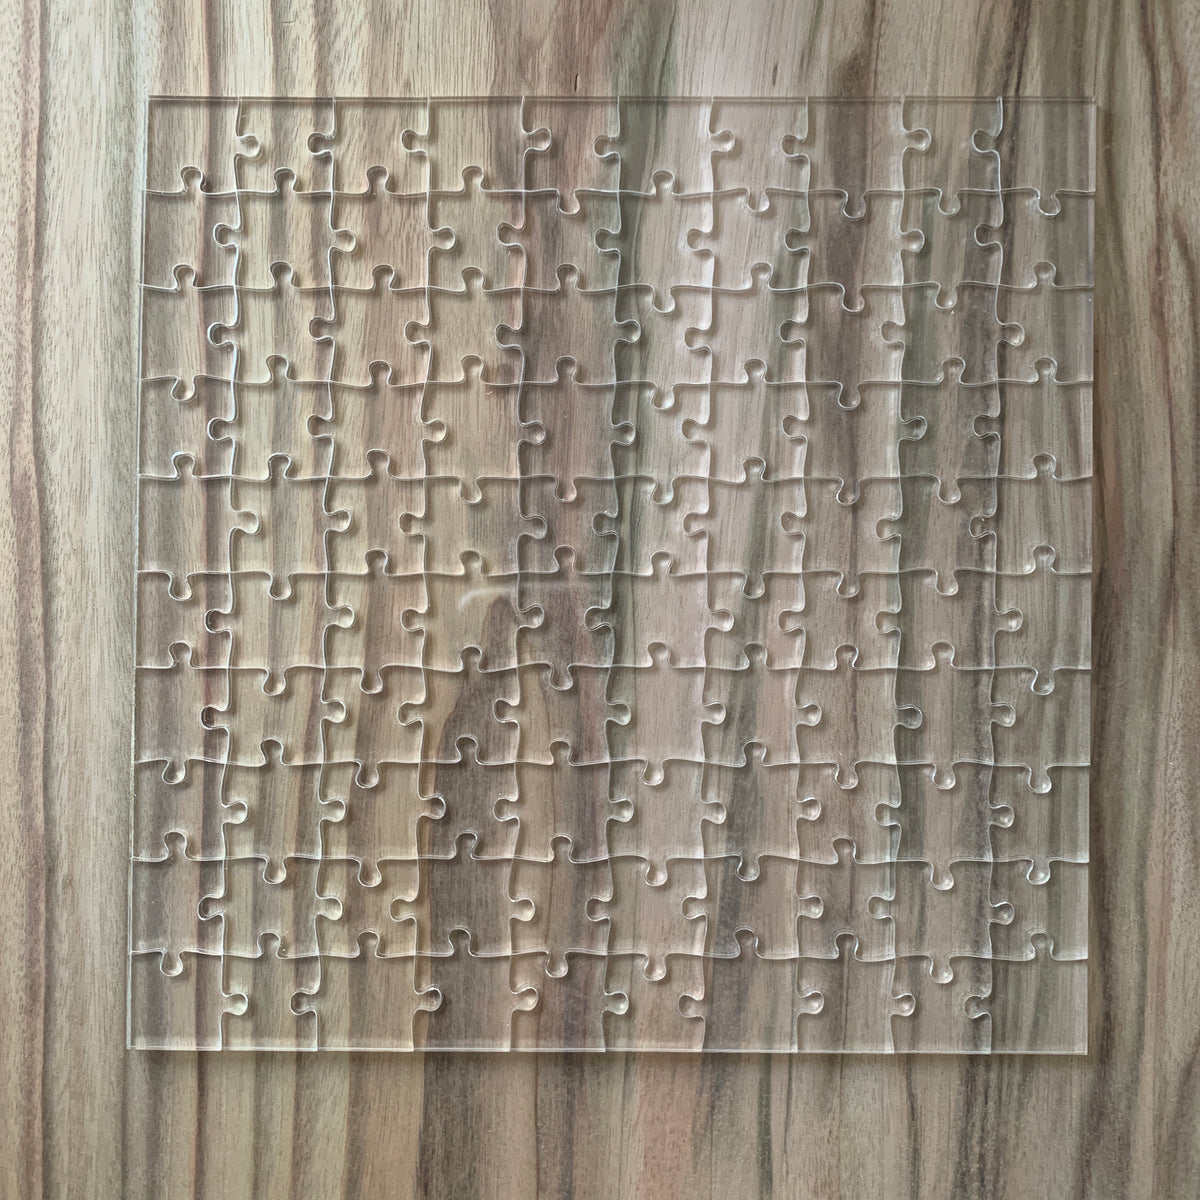 Jigsaw puzzle 100 piece clear Acrylic – Beezwax Wraps PPNBW.